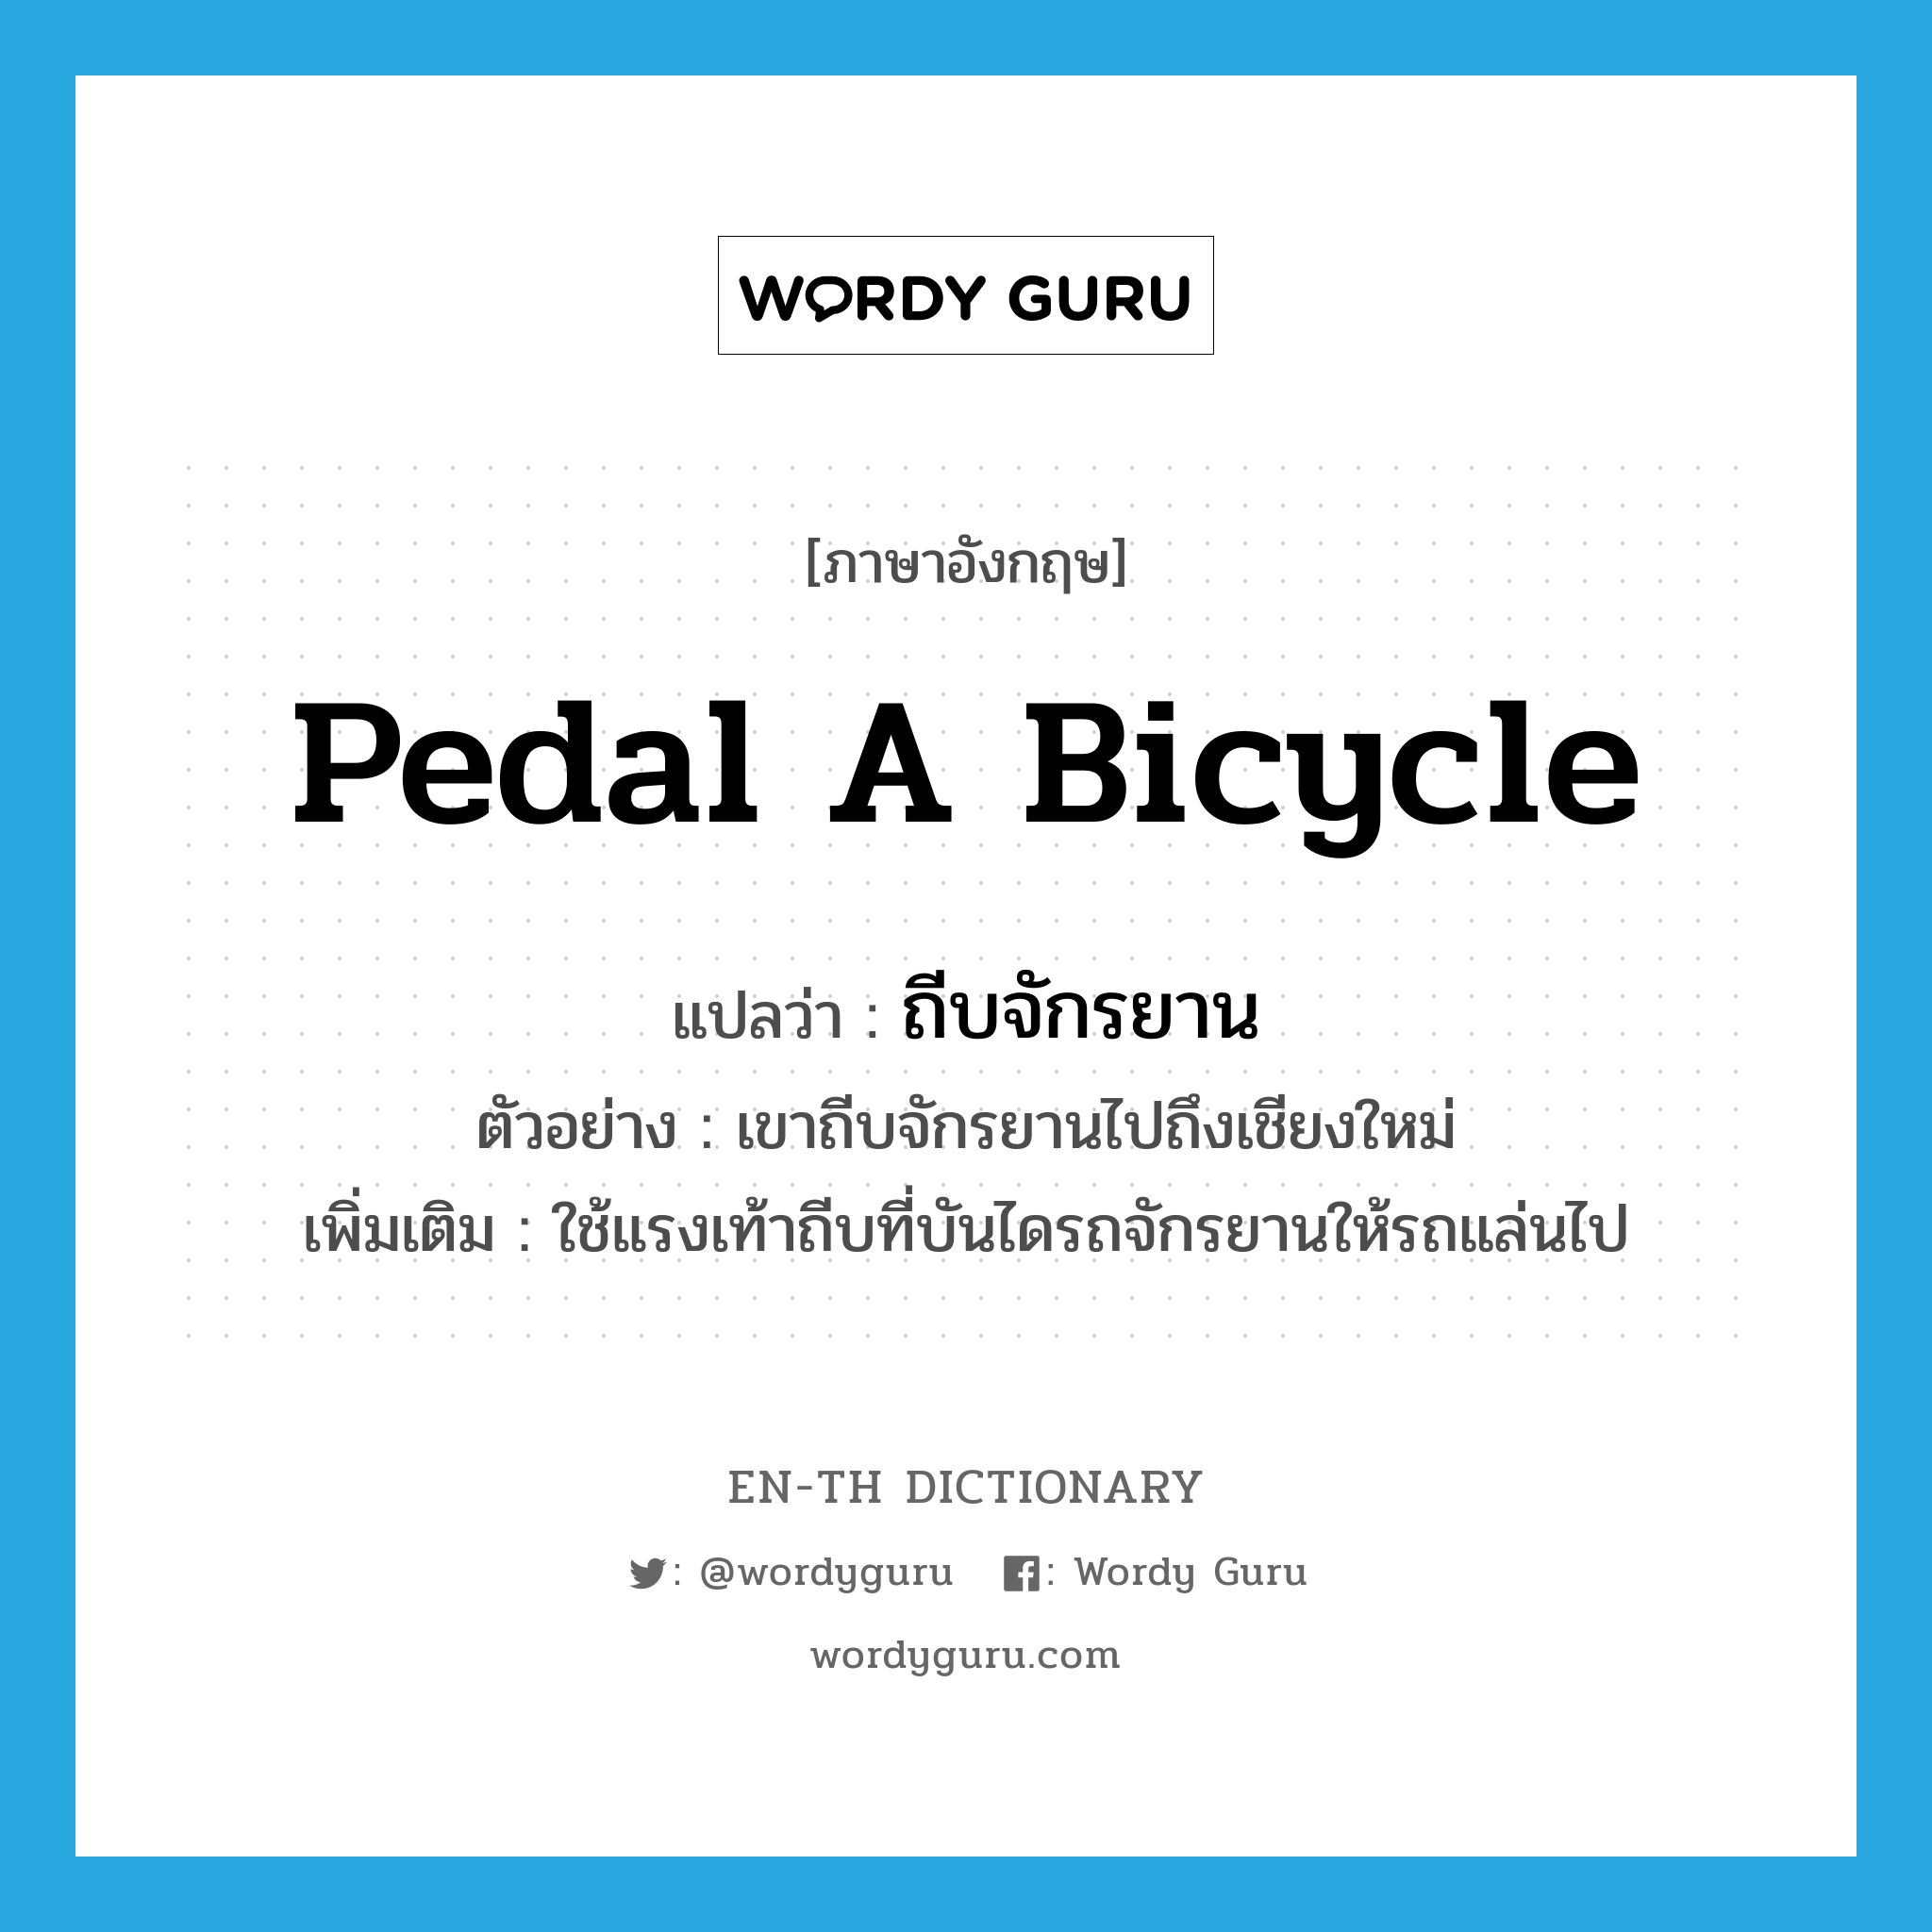 ถีบจักรยาน ภาษาอังกฤษ?, คำศัพท์ภาษาอังกฤษ ถีบจักรยาน แปลว่า pedal a bicycle ประเภท V ตัวอย่าง เขาถีบจักรยานไปถึงเชียงใหม่ เพิ่มเติม ใช้แรงเท้าถีบที่บันไดรถจักรยานให้รถแล่นไป หมวด V